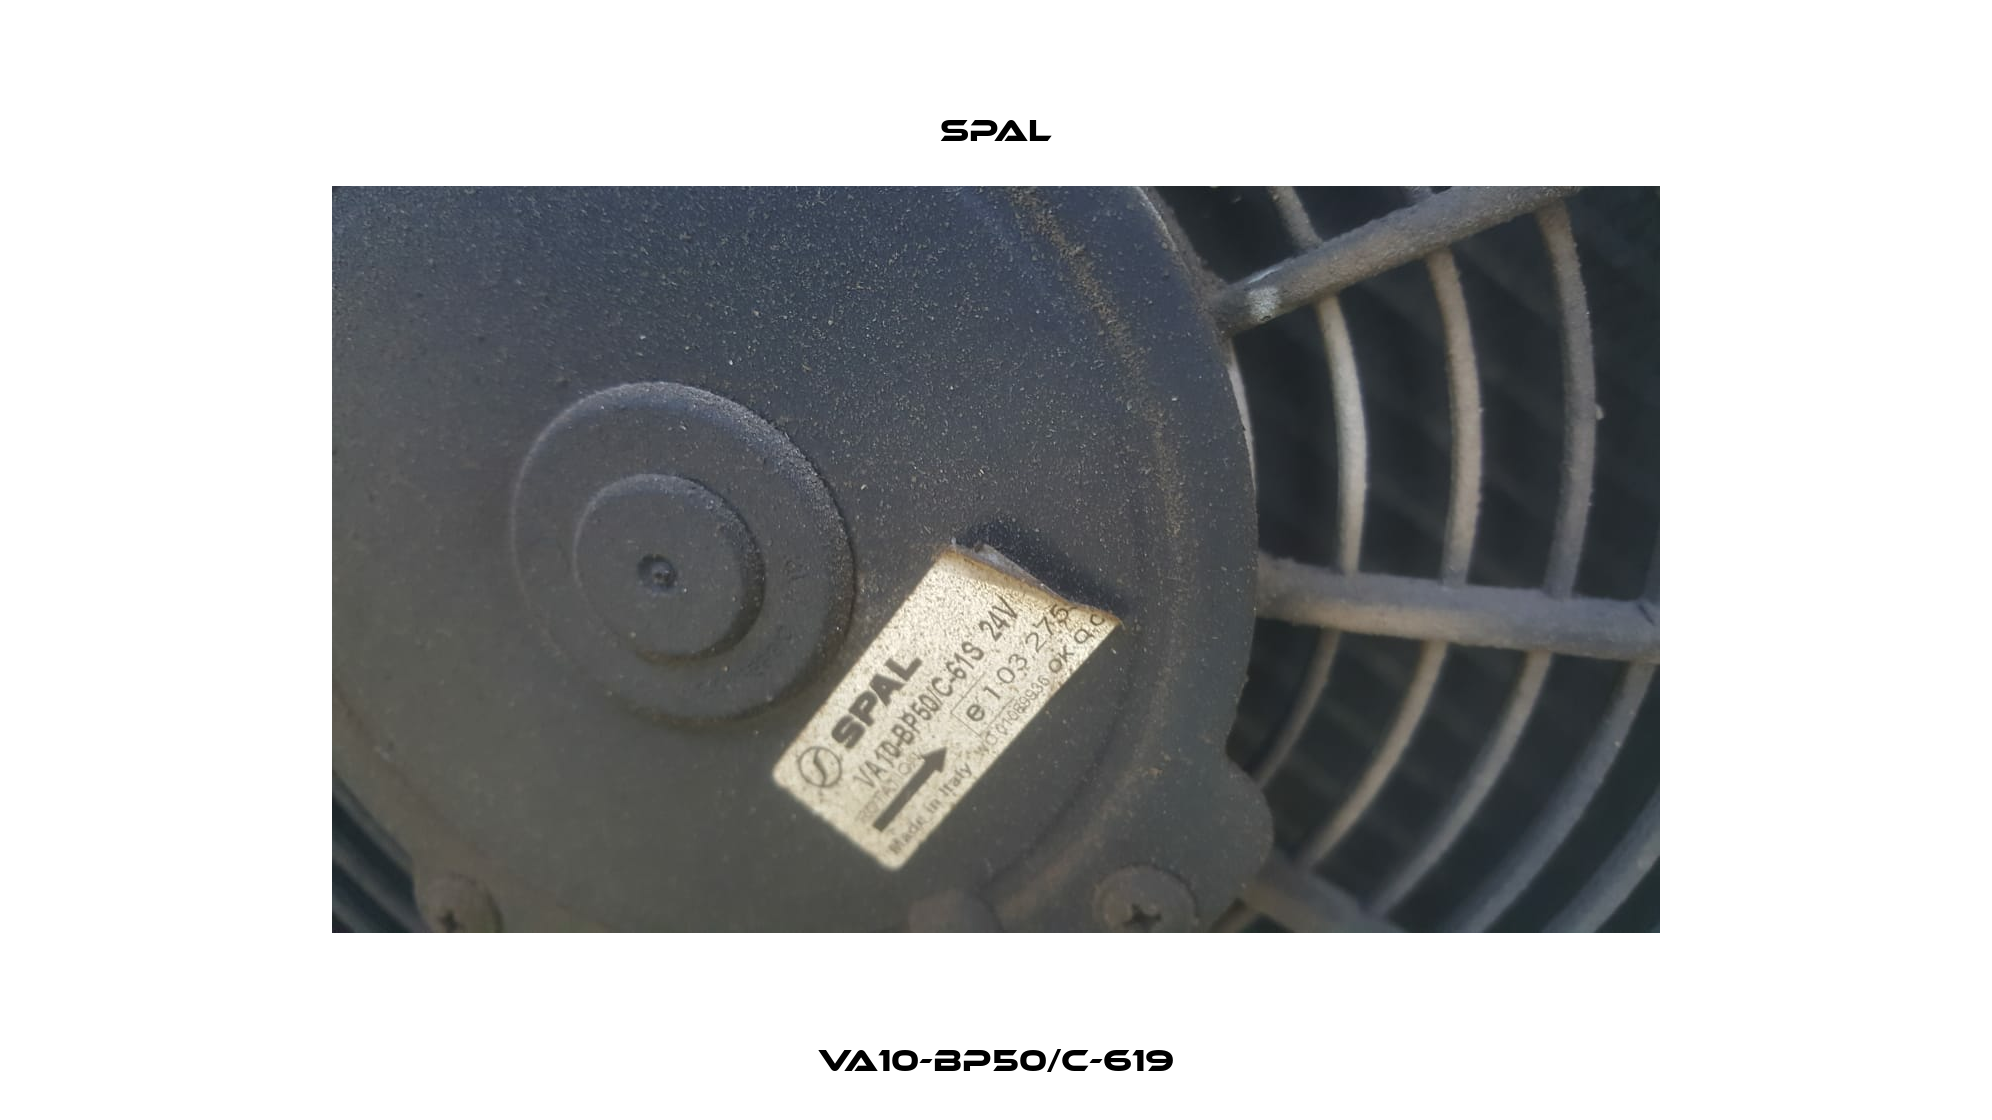 VA10-BP50/C-619 SPAL